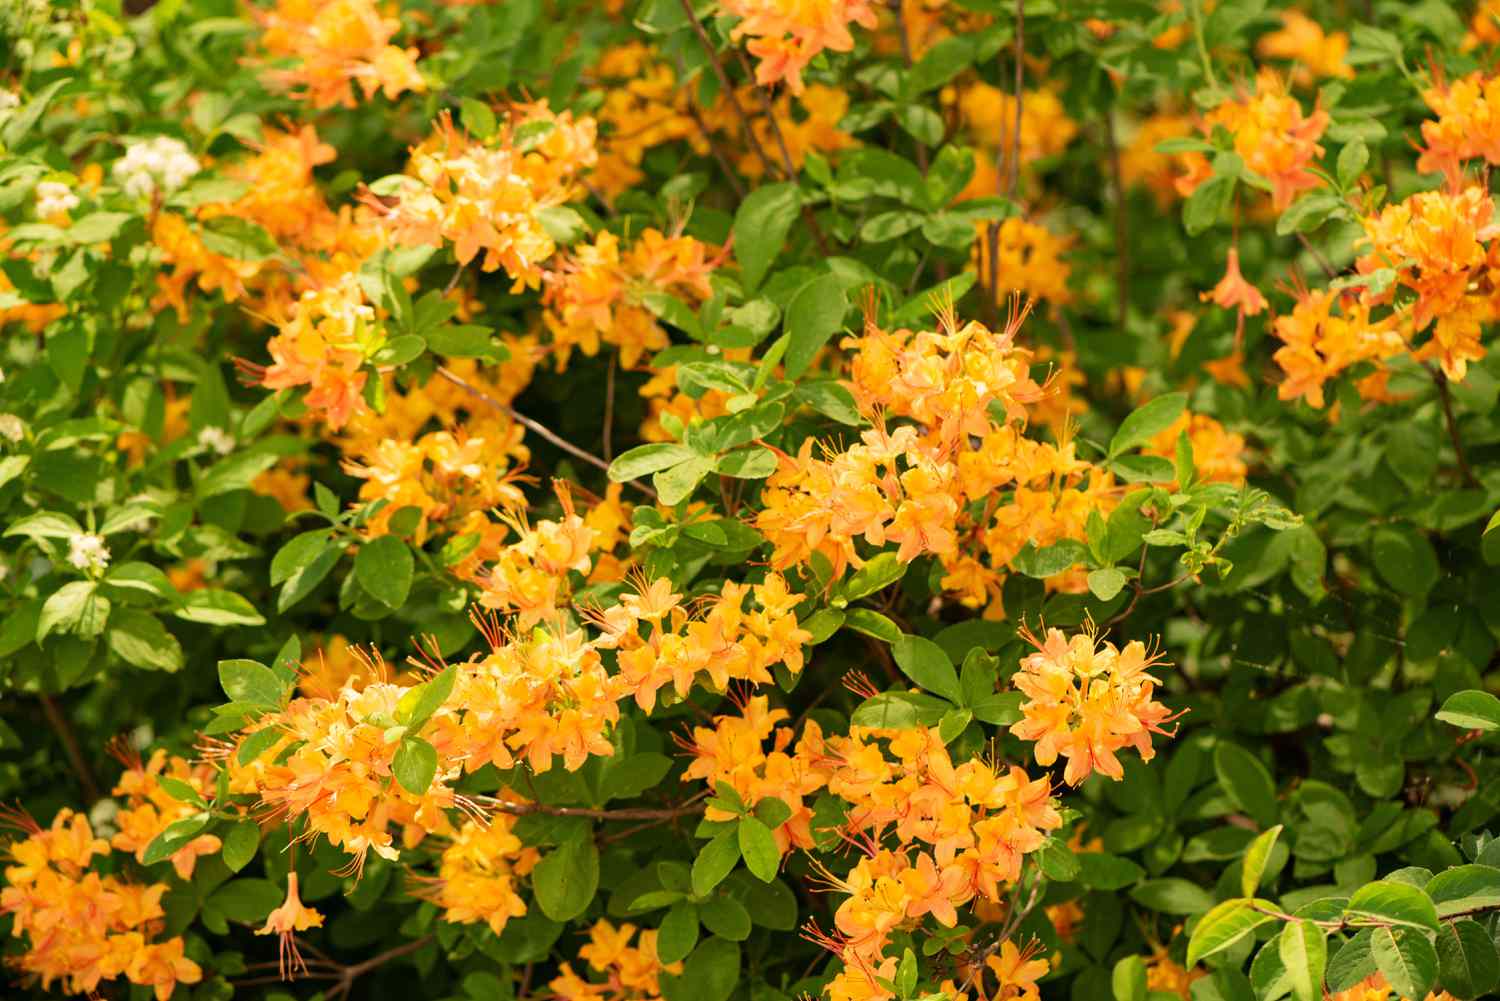 Goldoriolen-Azaleenstrauch mit kleinen orangefarbenen Blüten, die an Zweigen mit Blättern hängen